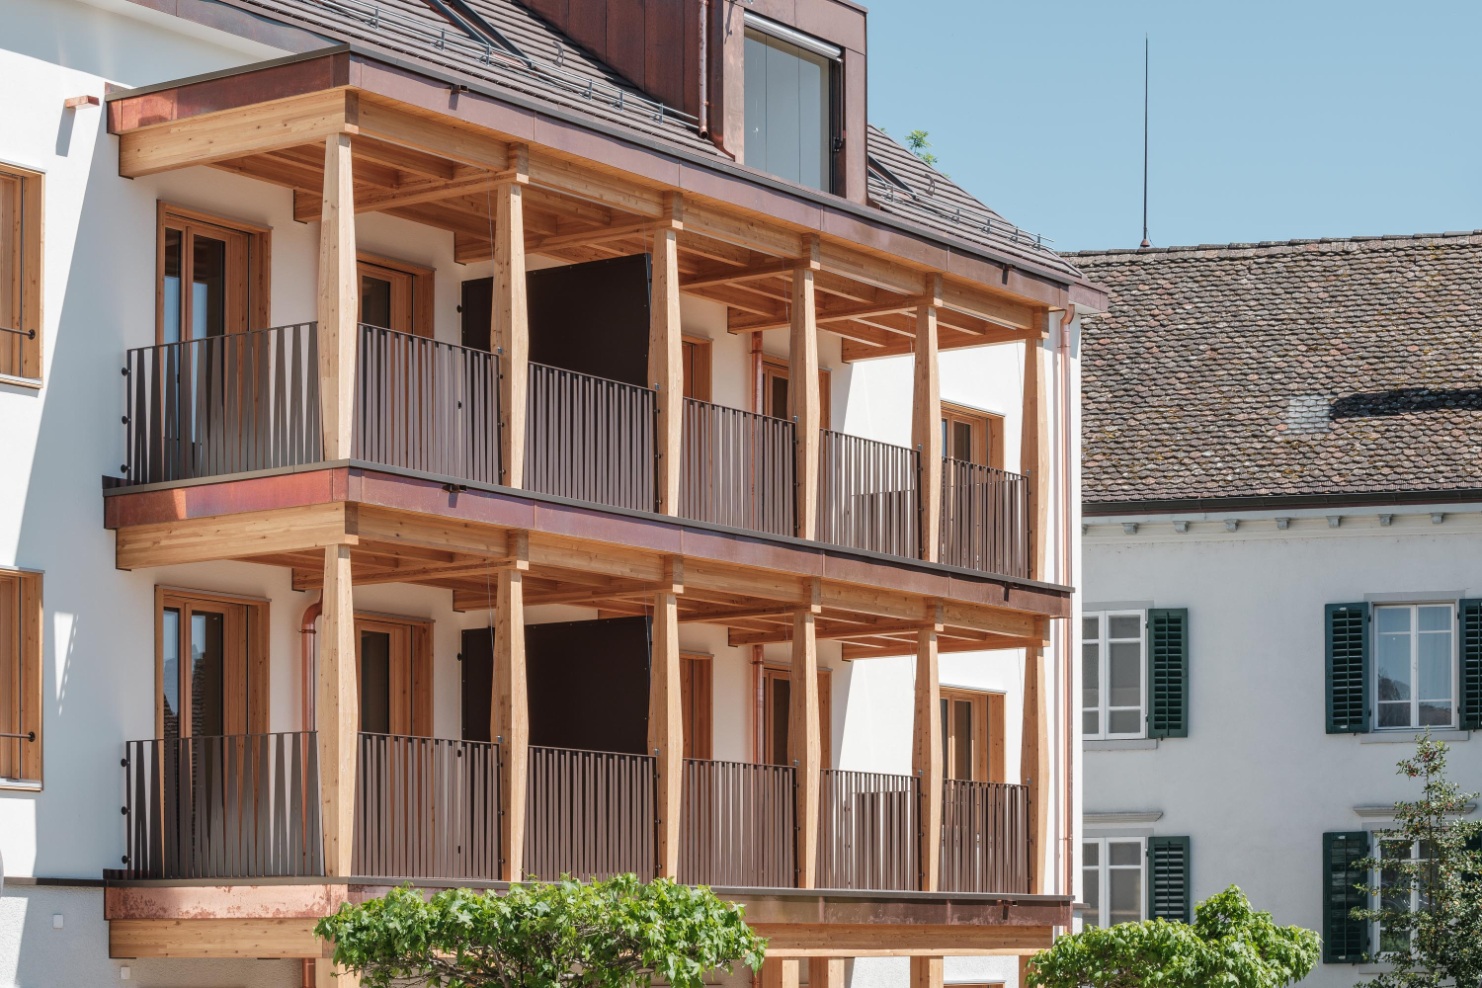 Façade de l’immeuble avec ses balcons caractéristiques en bois et une lucarne dans le toit.